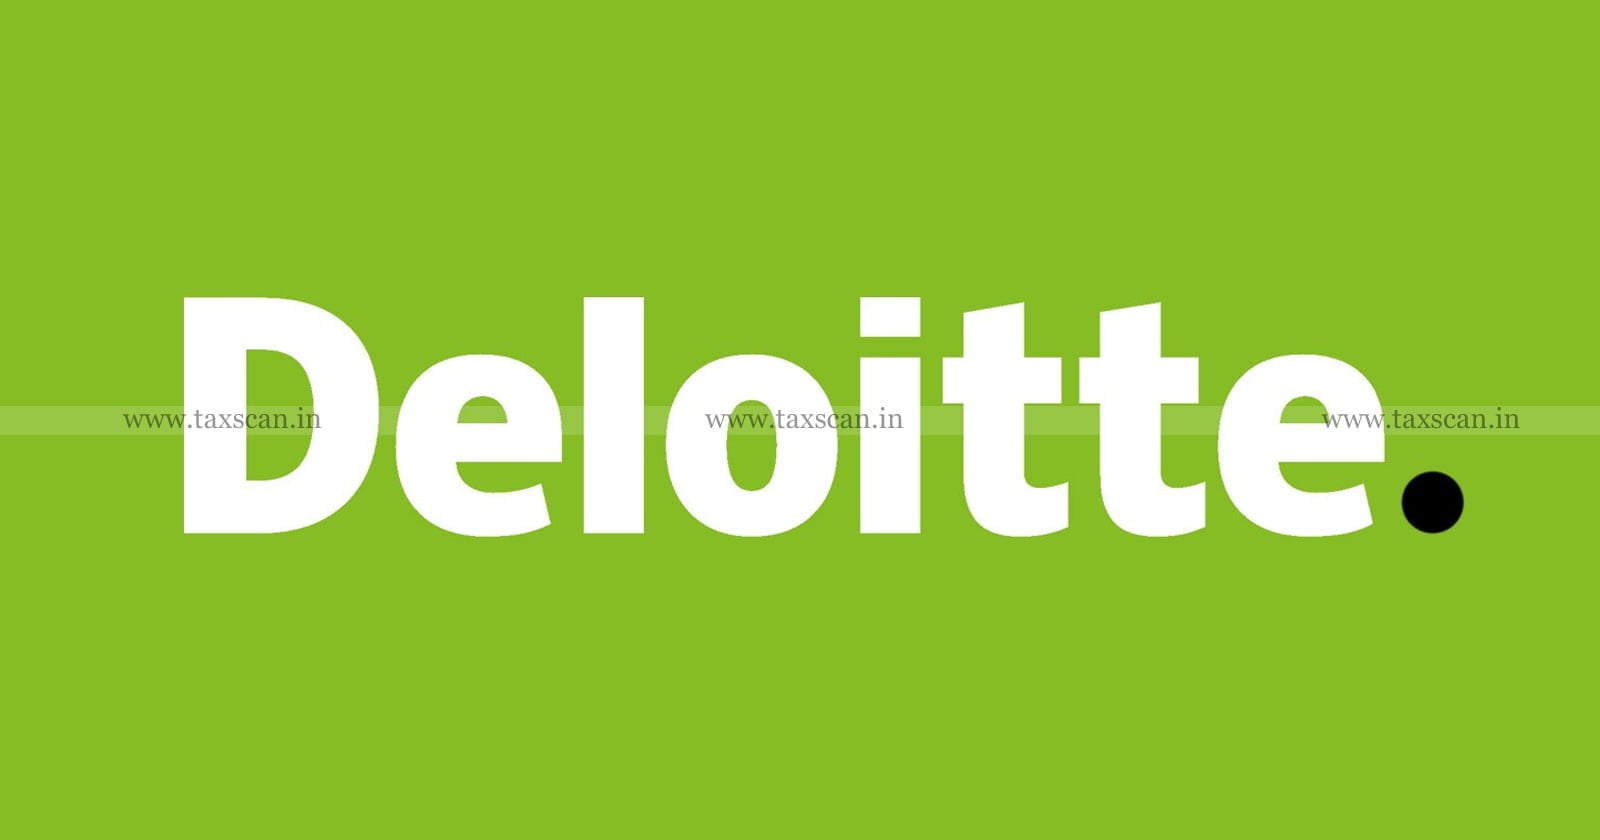 CA Vacancy in Deloitte - CA Opportunities In Deloitte - CA Careers In Deloitte - CA Job Opportunities In Deloitte - TAXSCAN